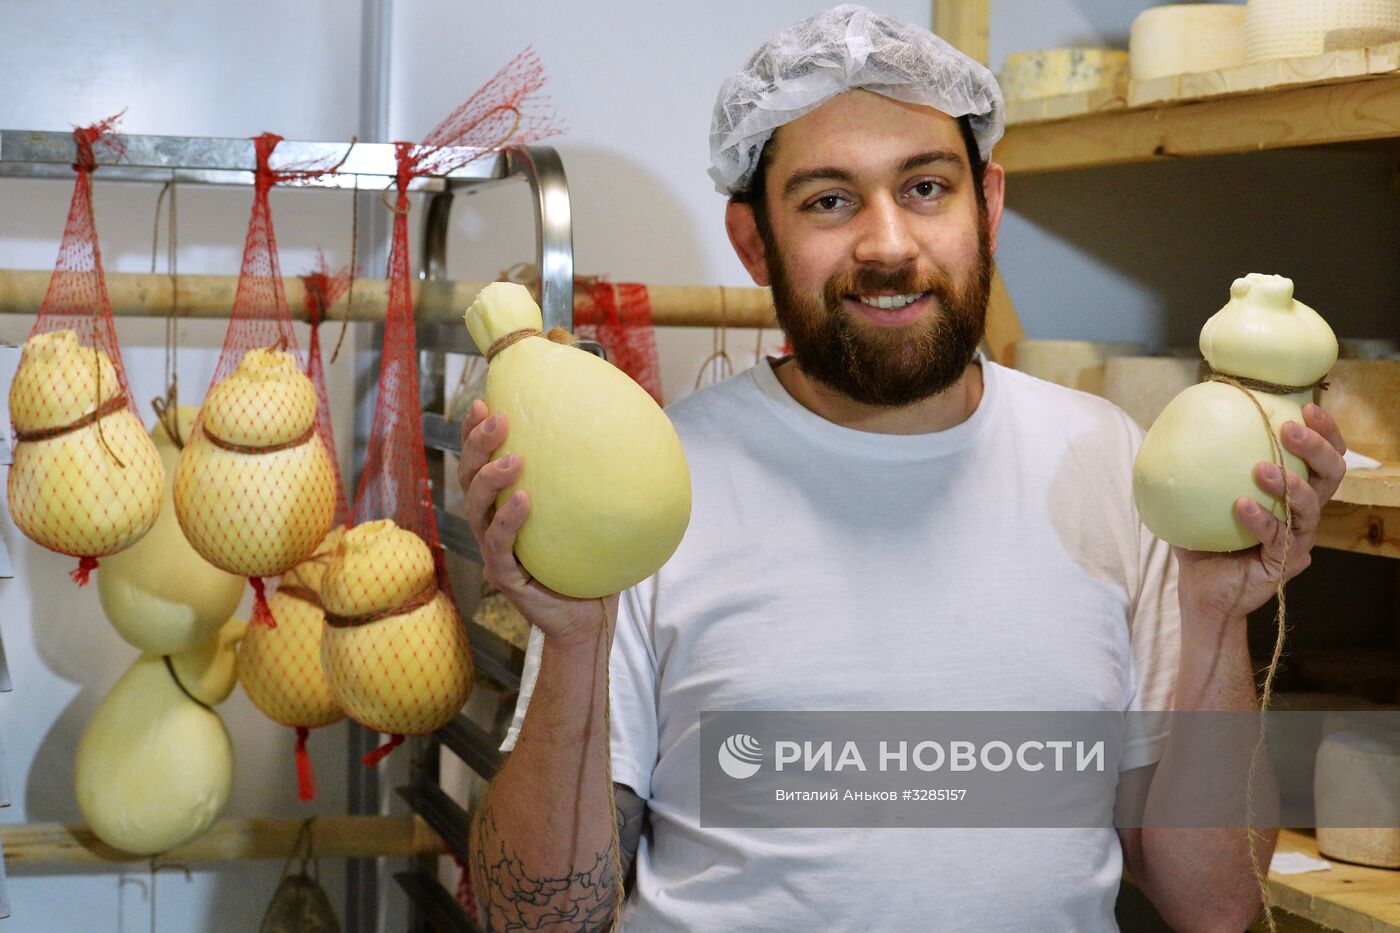 Производство сыров на ферме "Домашняя" в Приморском крае